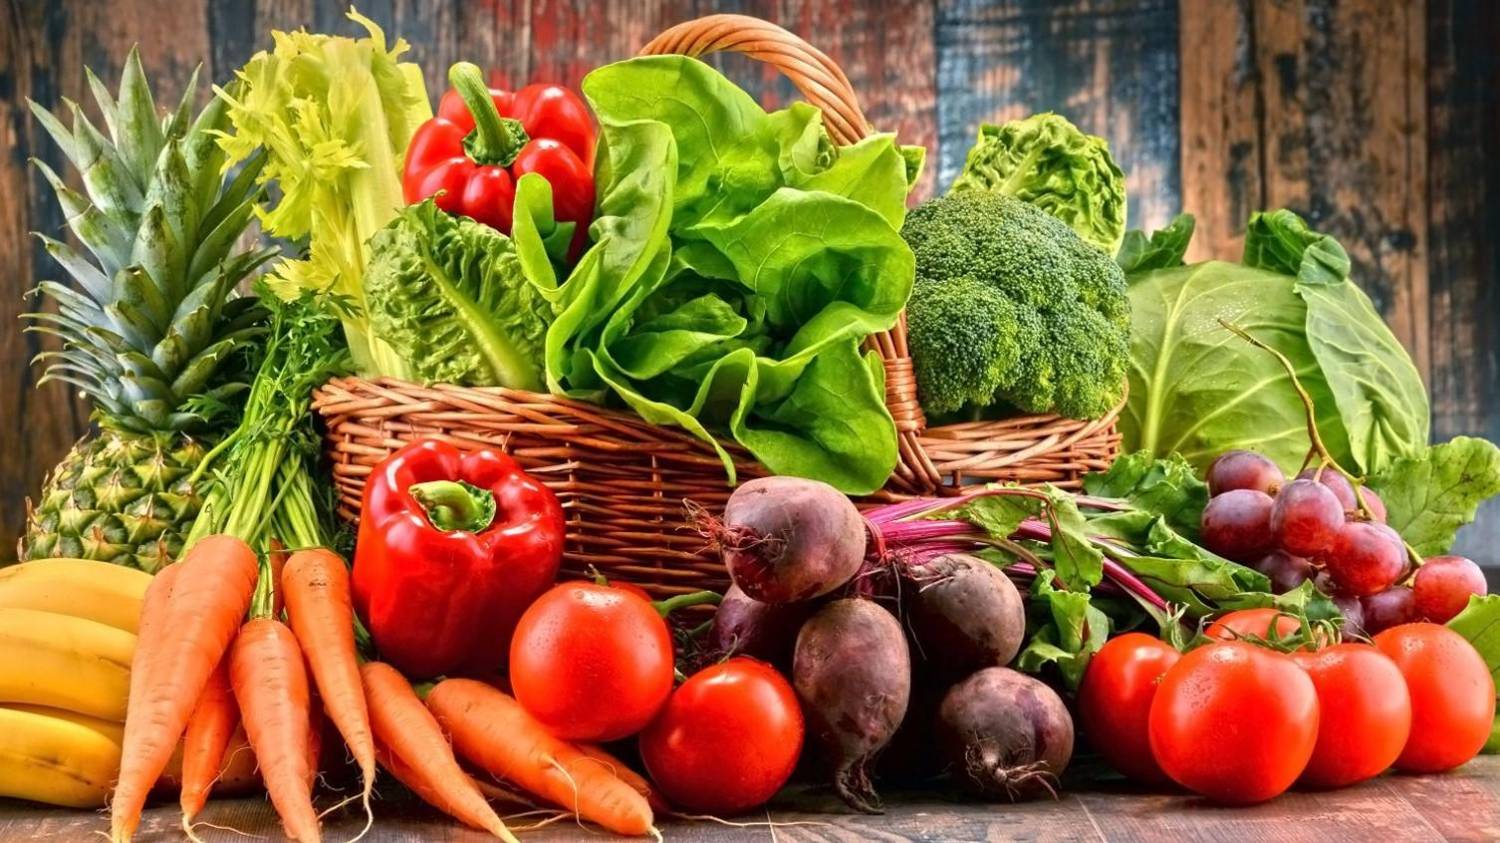 Comer frutas, verduras e legumes crus reduzem depressão, aponta estudo